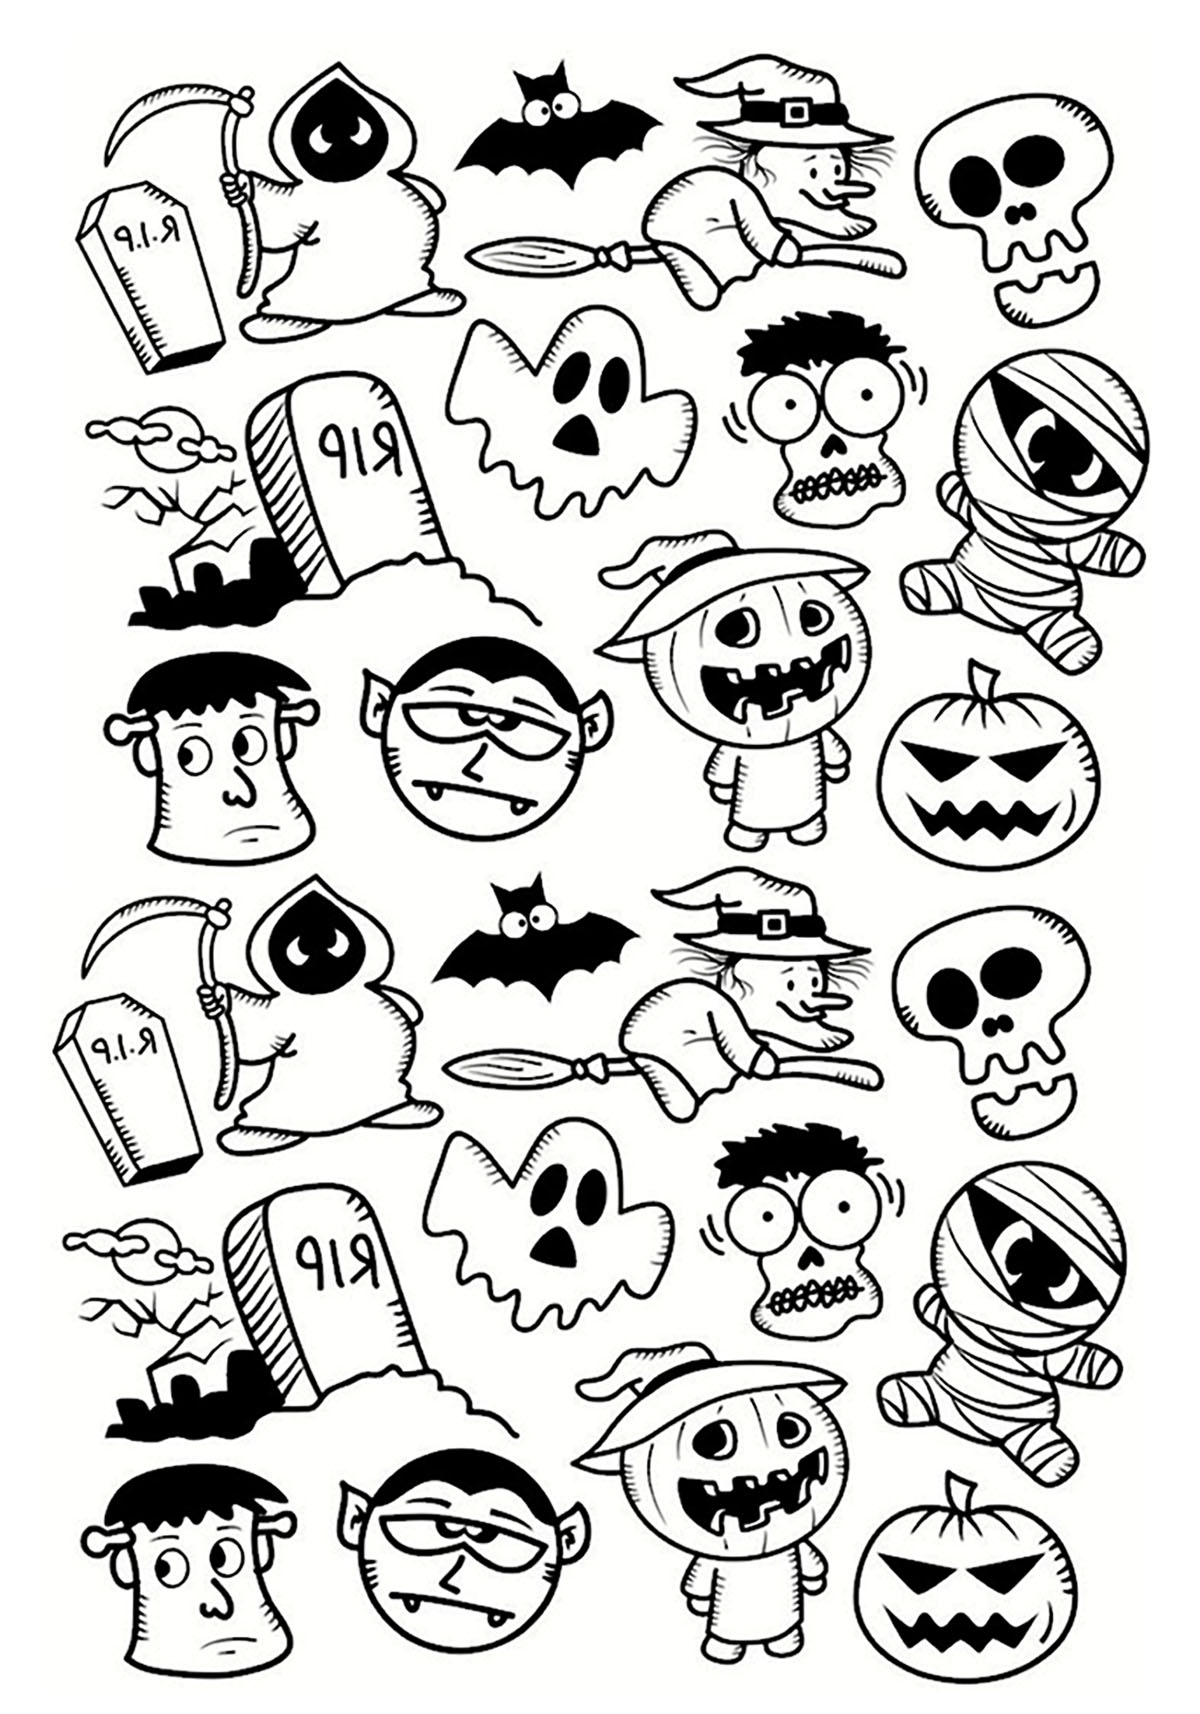 Páginas para colorear de Halloween gratis para descargar